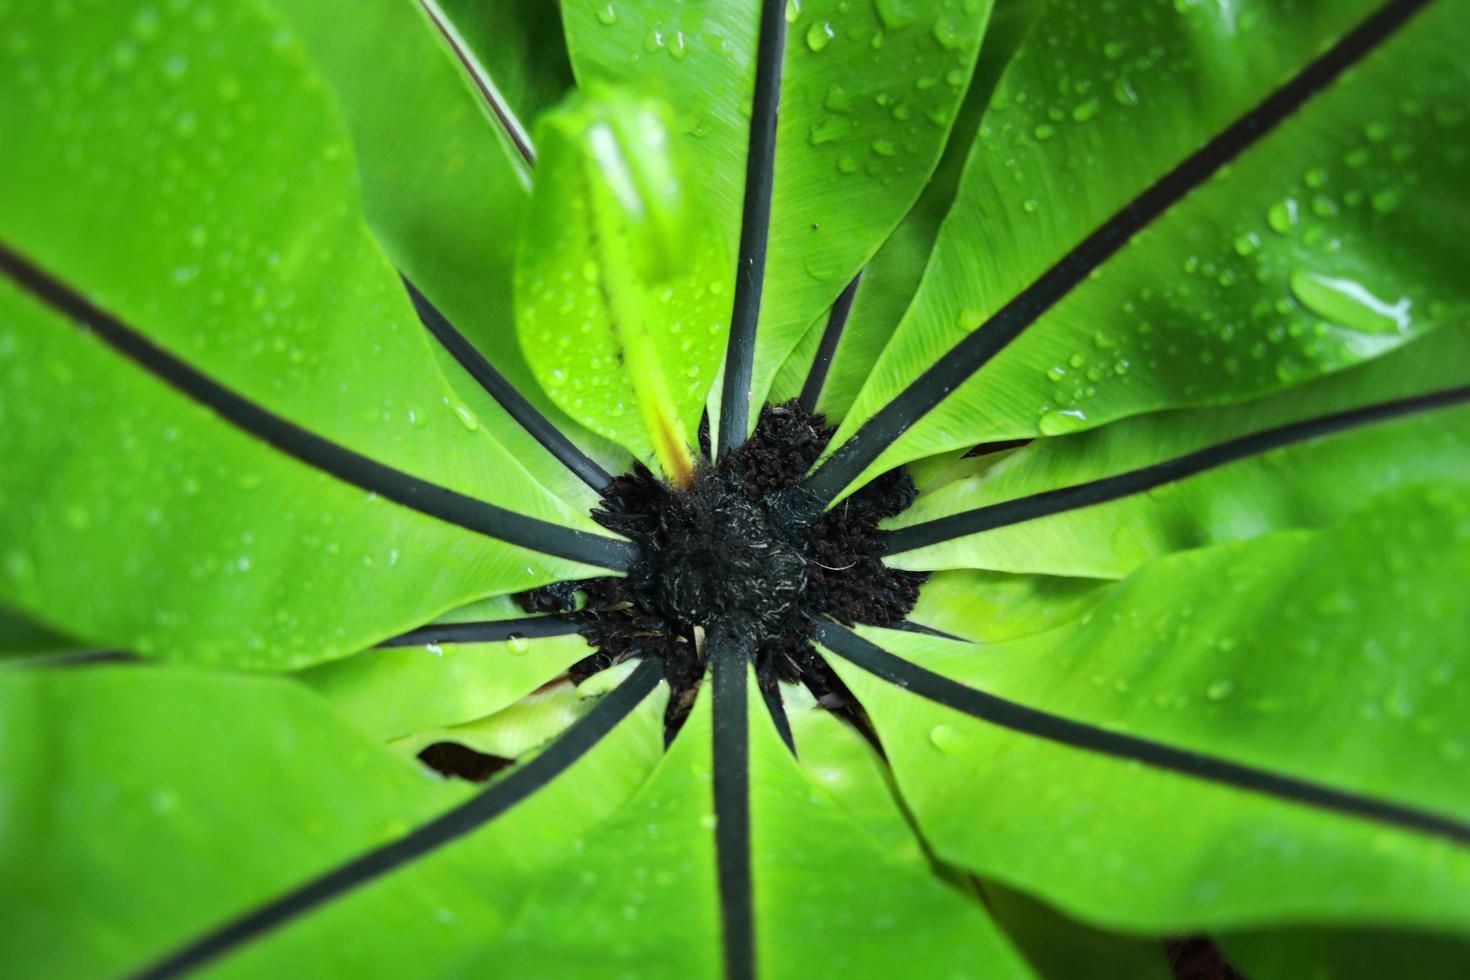 ljusgröna blad av fågelbo ormbunke, ovanifrån. mellannerven spridd från mitten och svart färg. foto